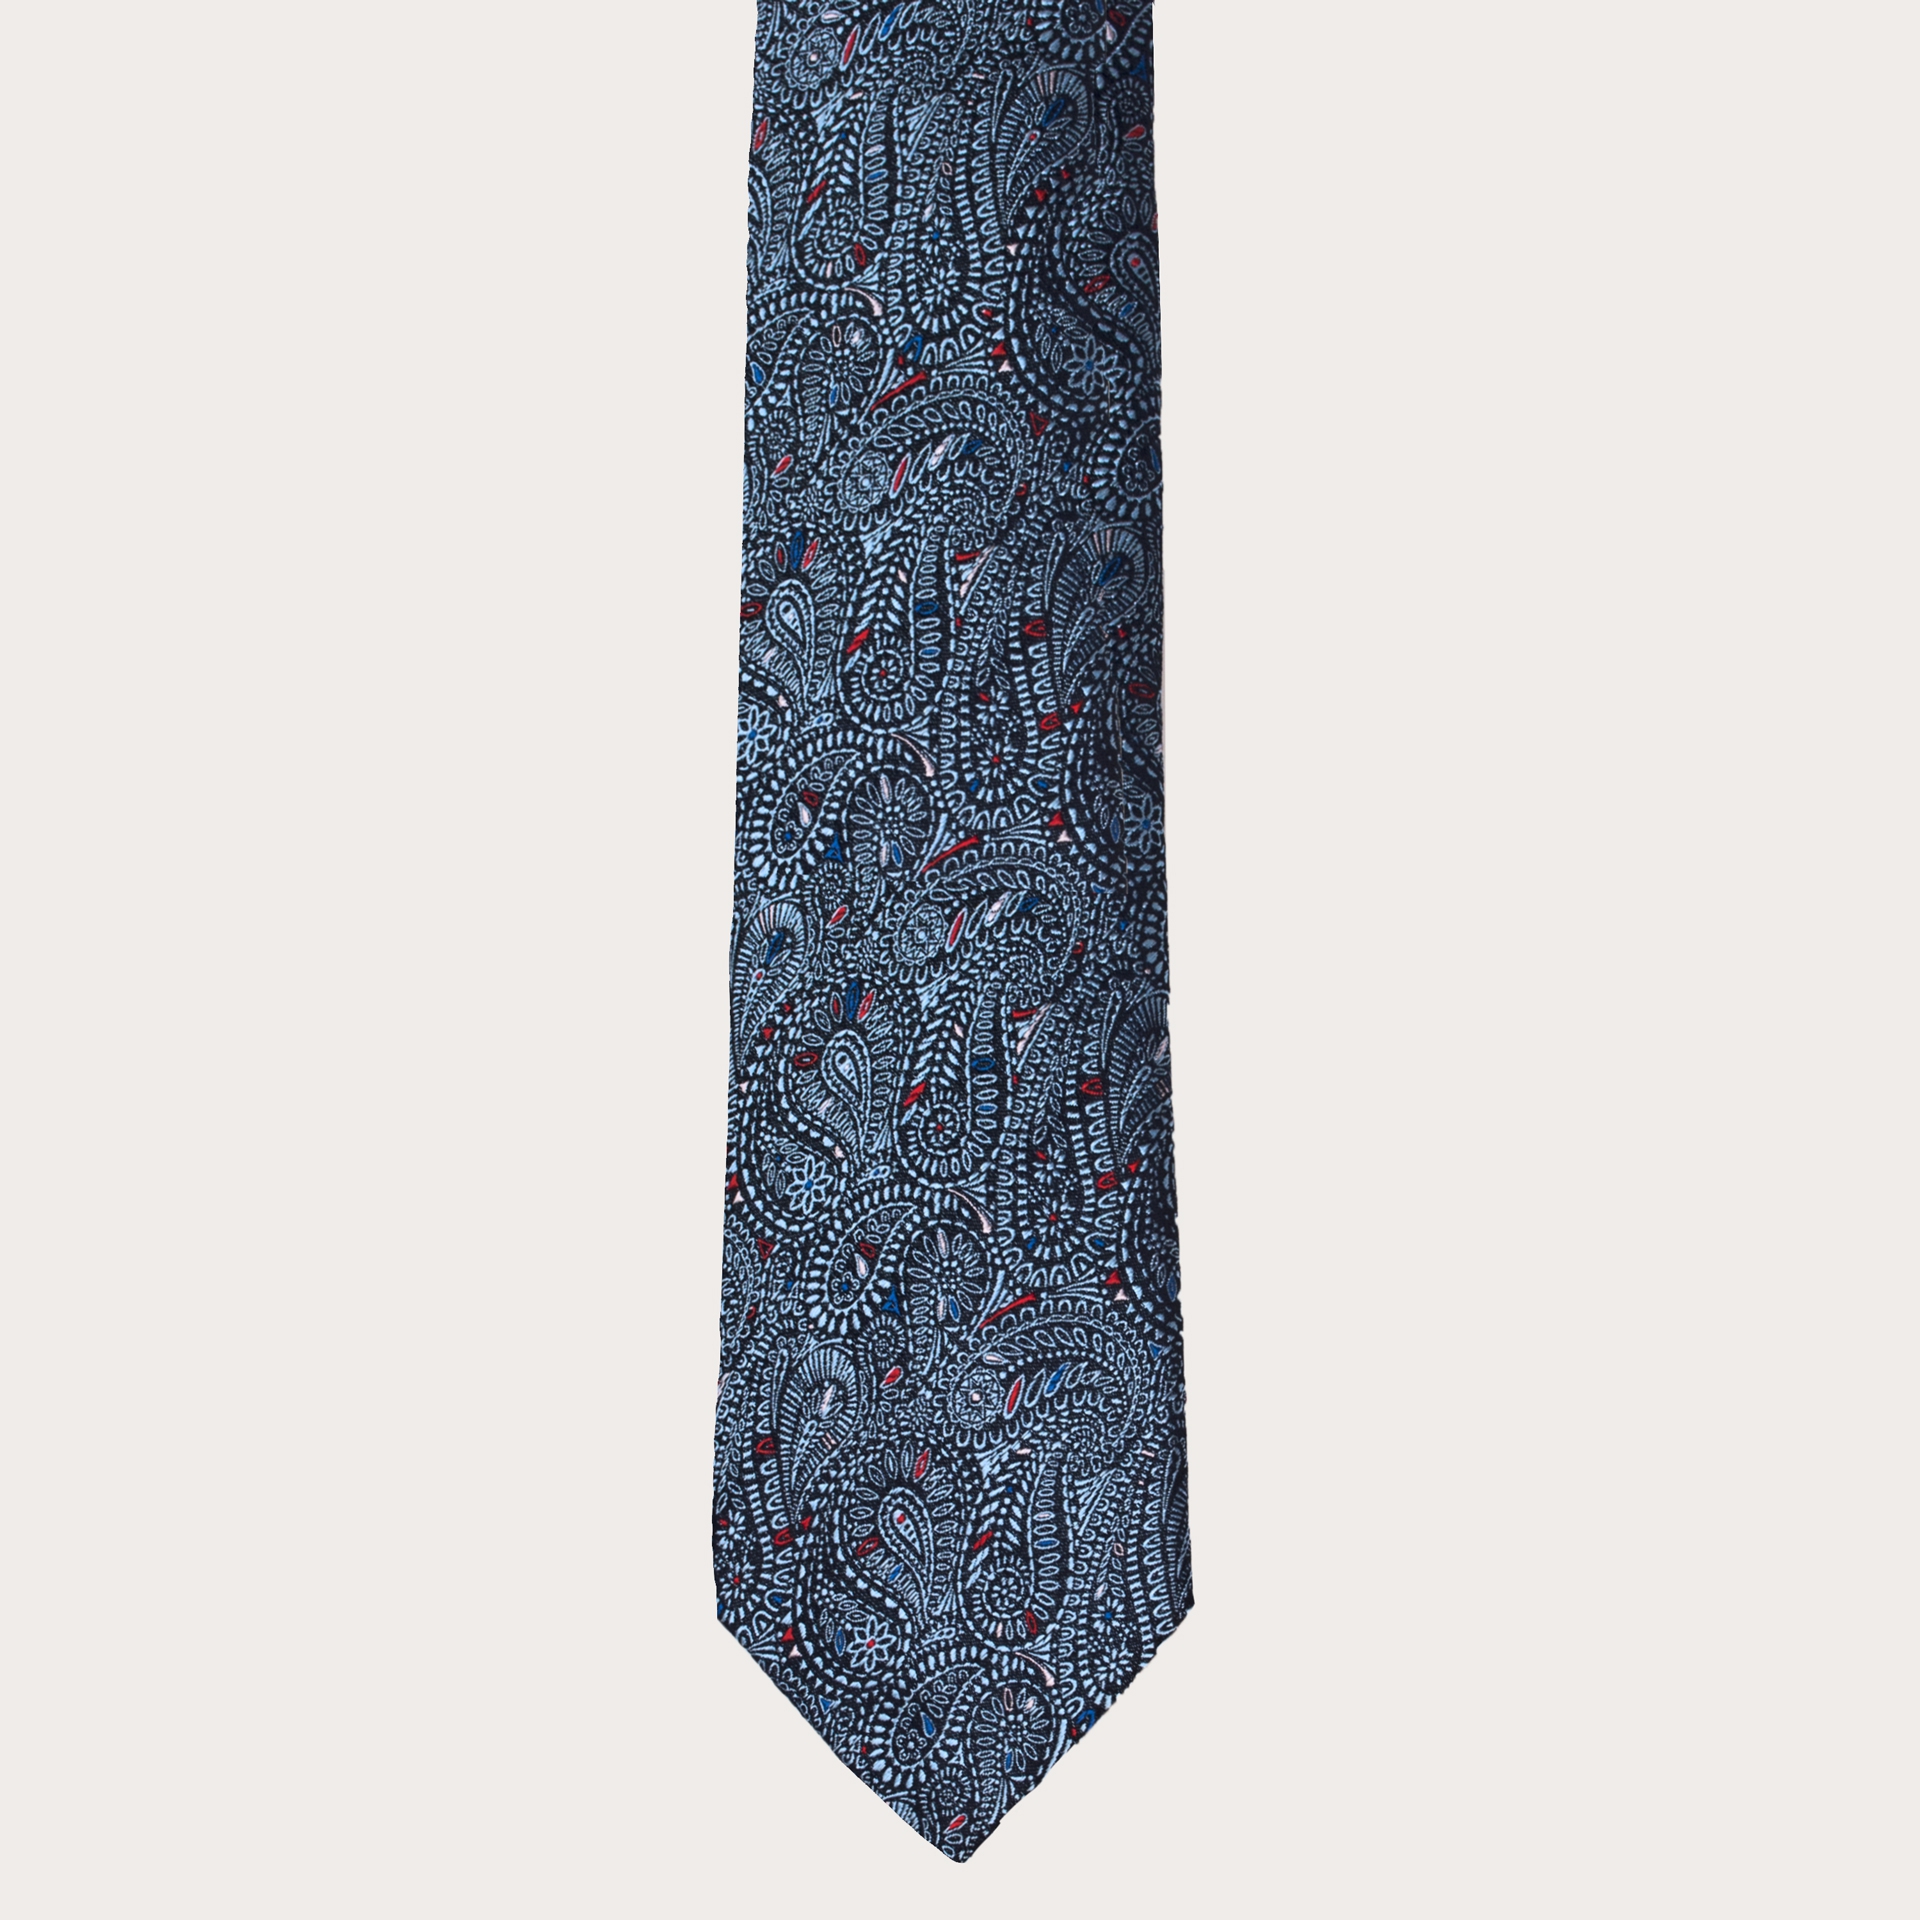 Brucle cravate bleue cachemire en soie jacquard